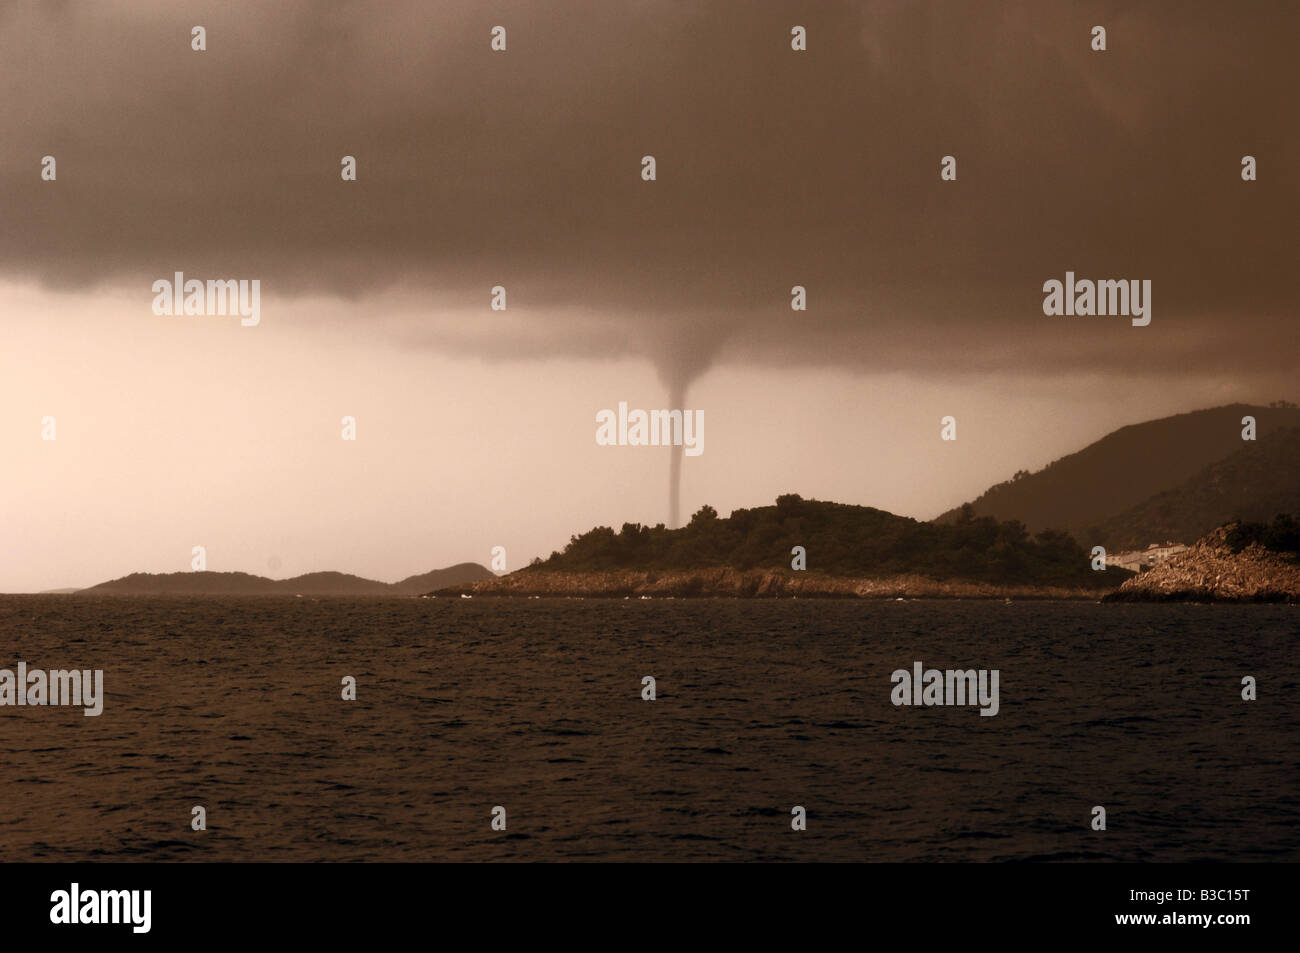 Gewitterhimmel mit Tornado oder Wasserhose, Korcula, Kroatien Stockfoto